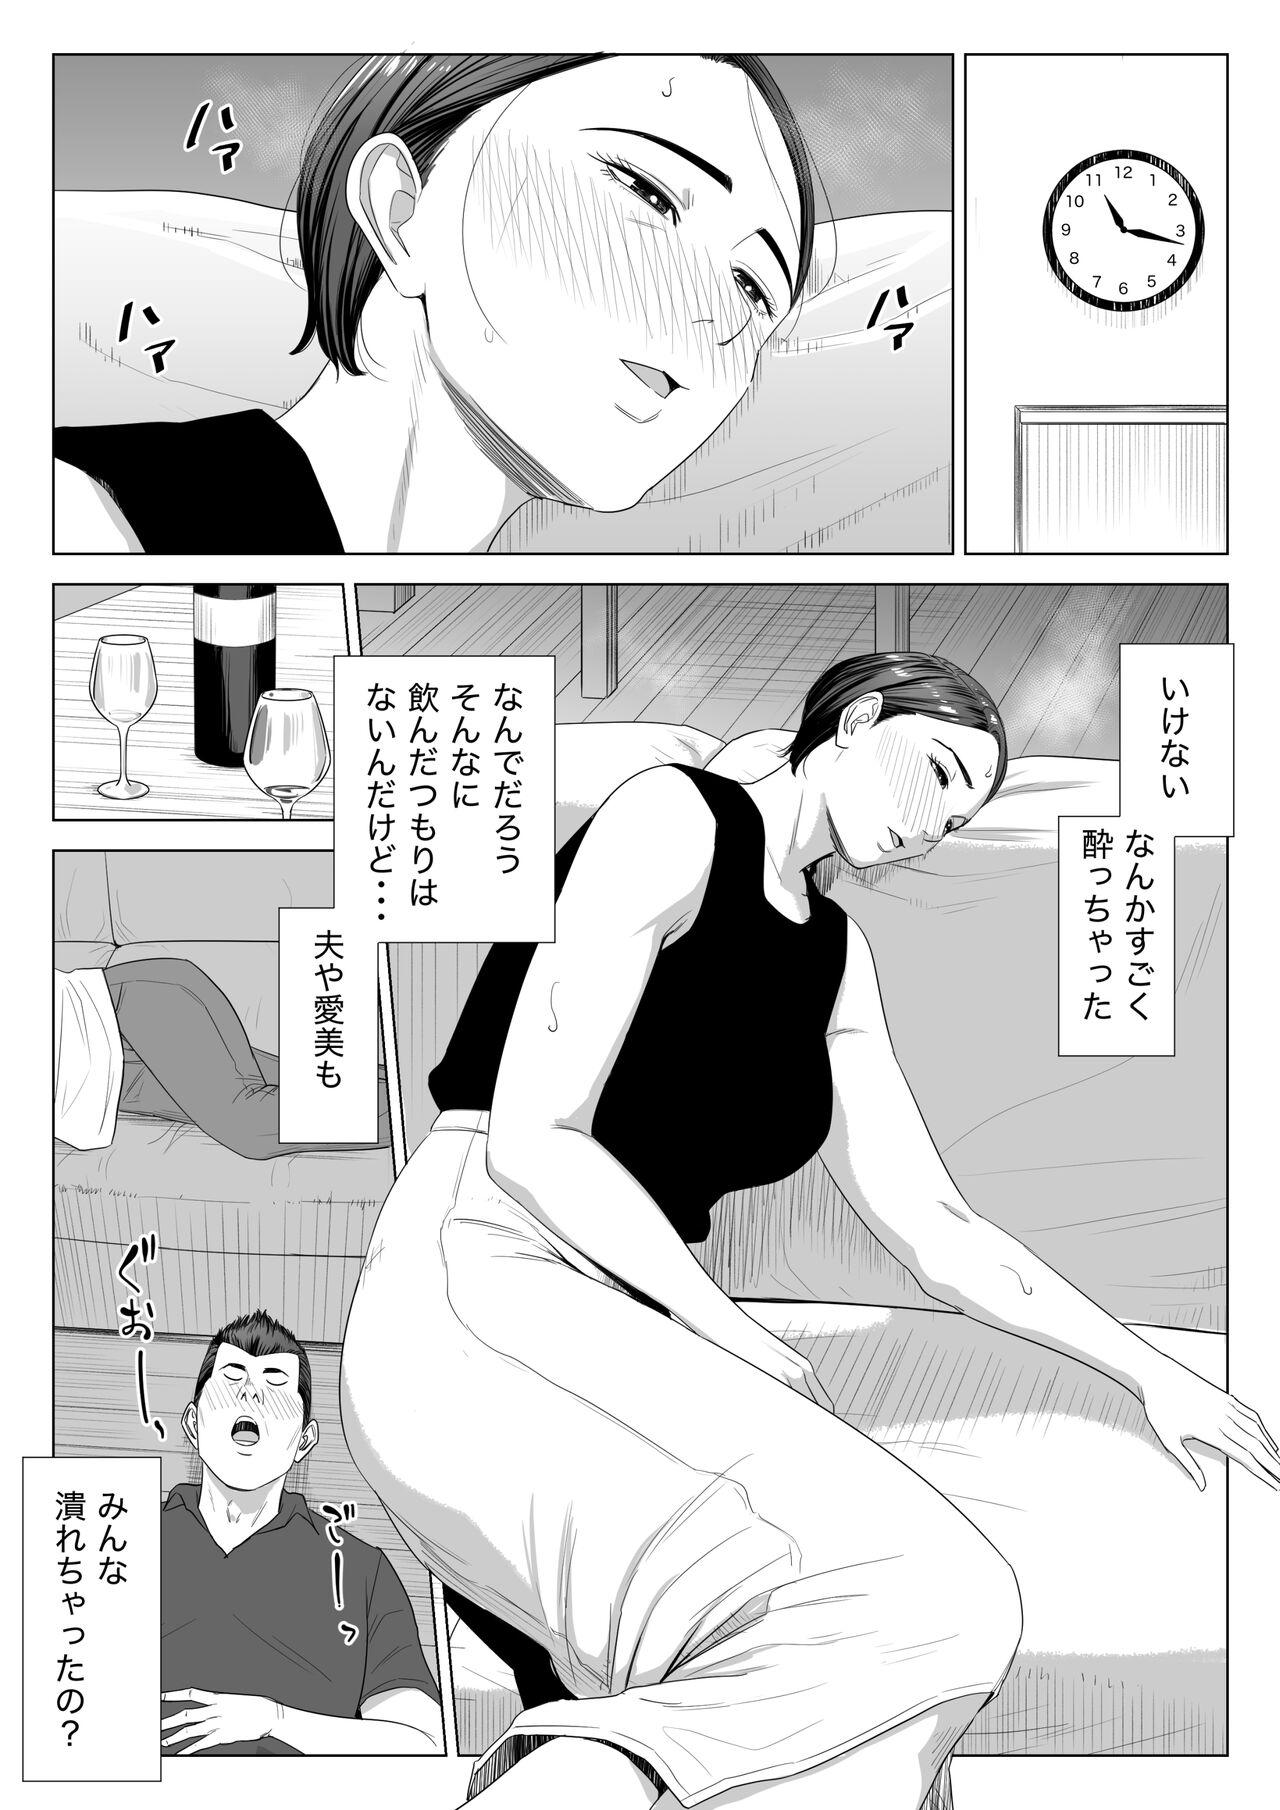 Friend Gibo no tsukaeru karada. - Original Fitness - Page 9